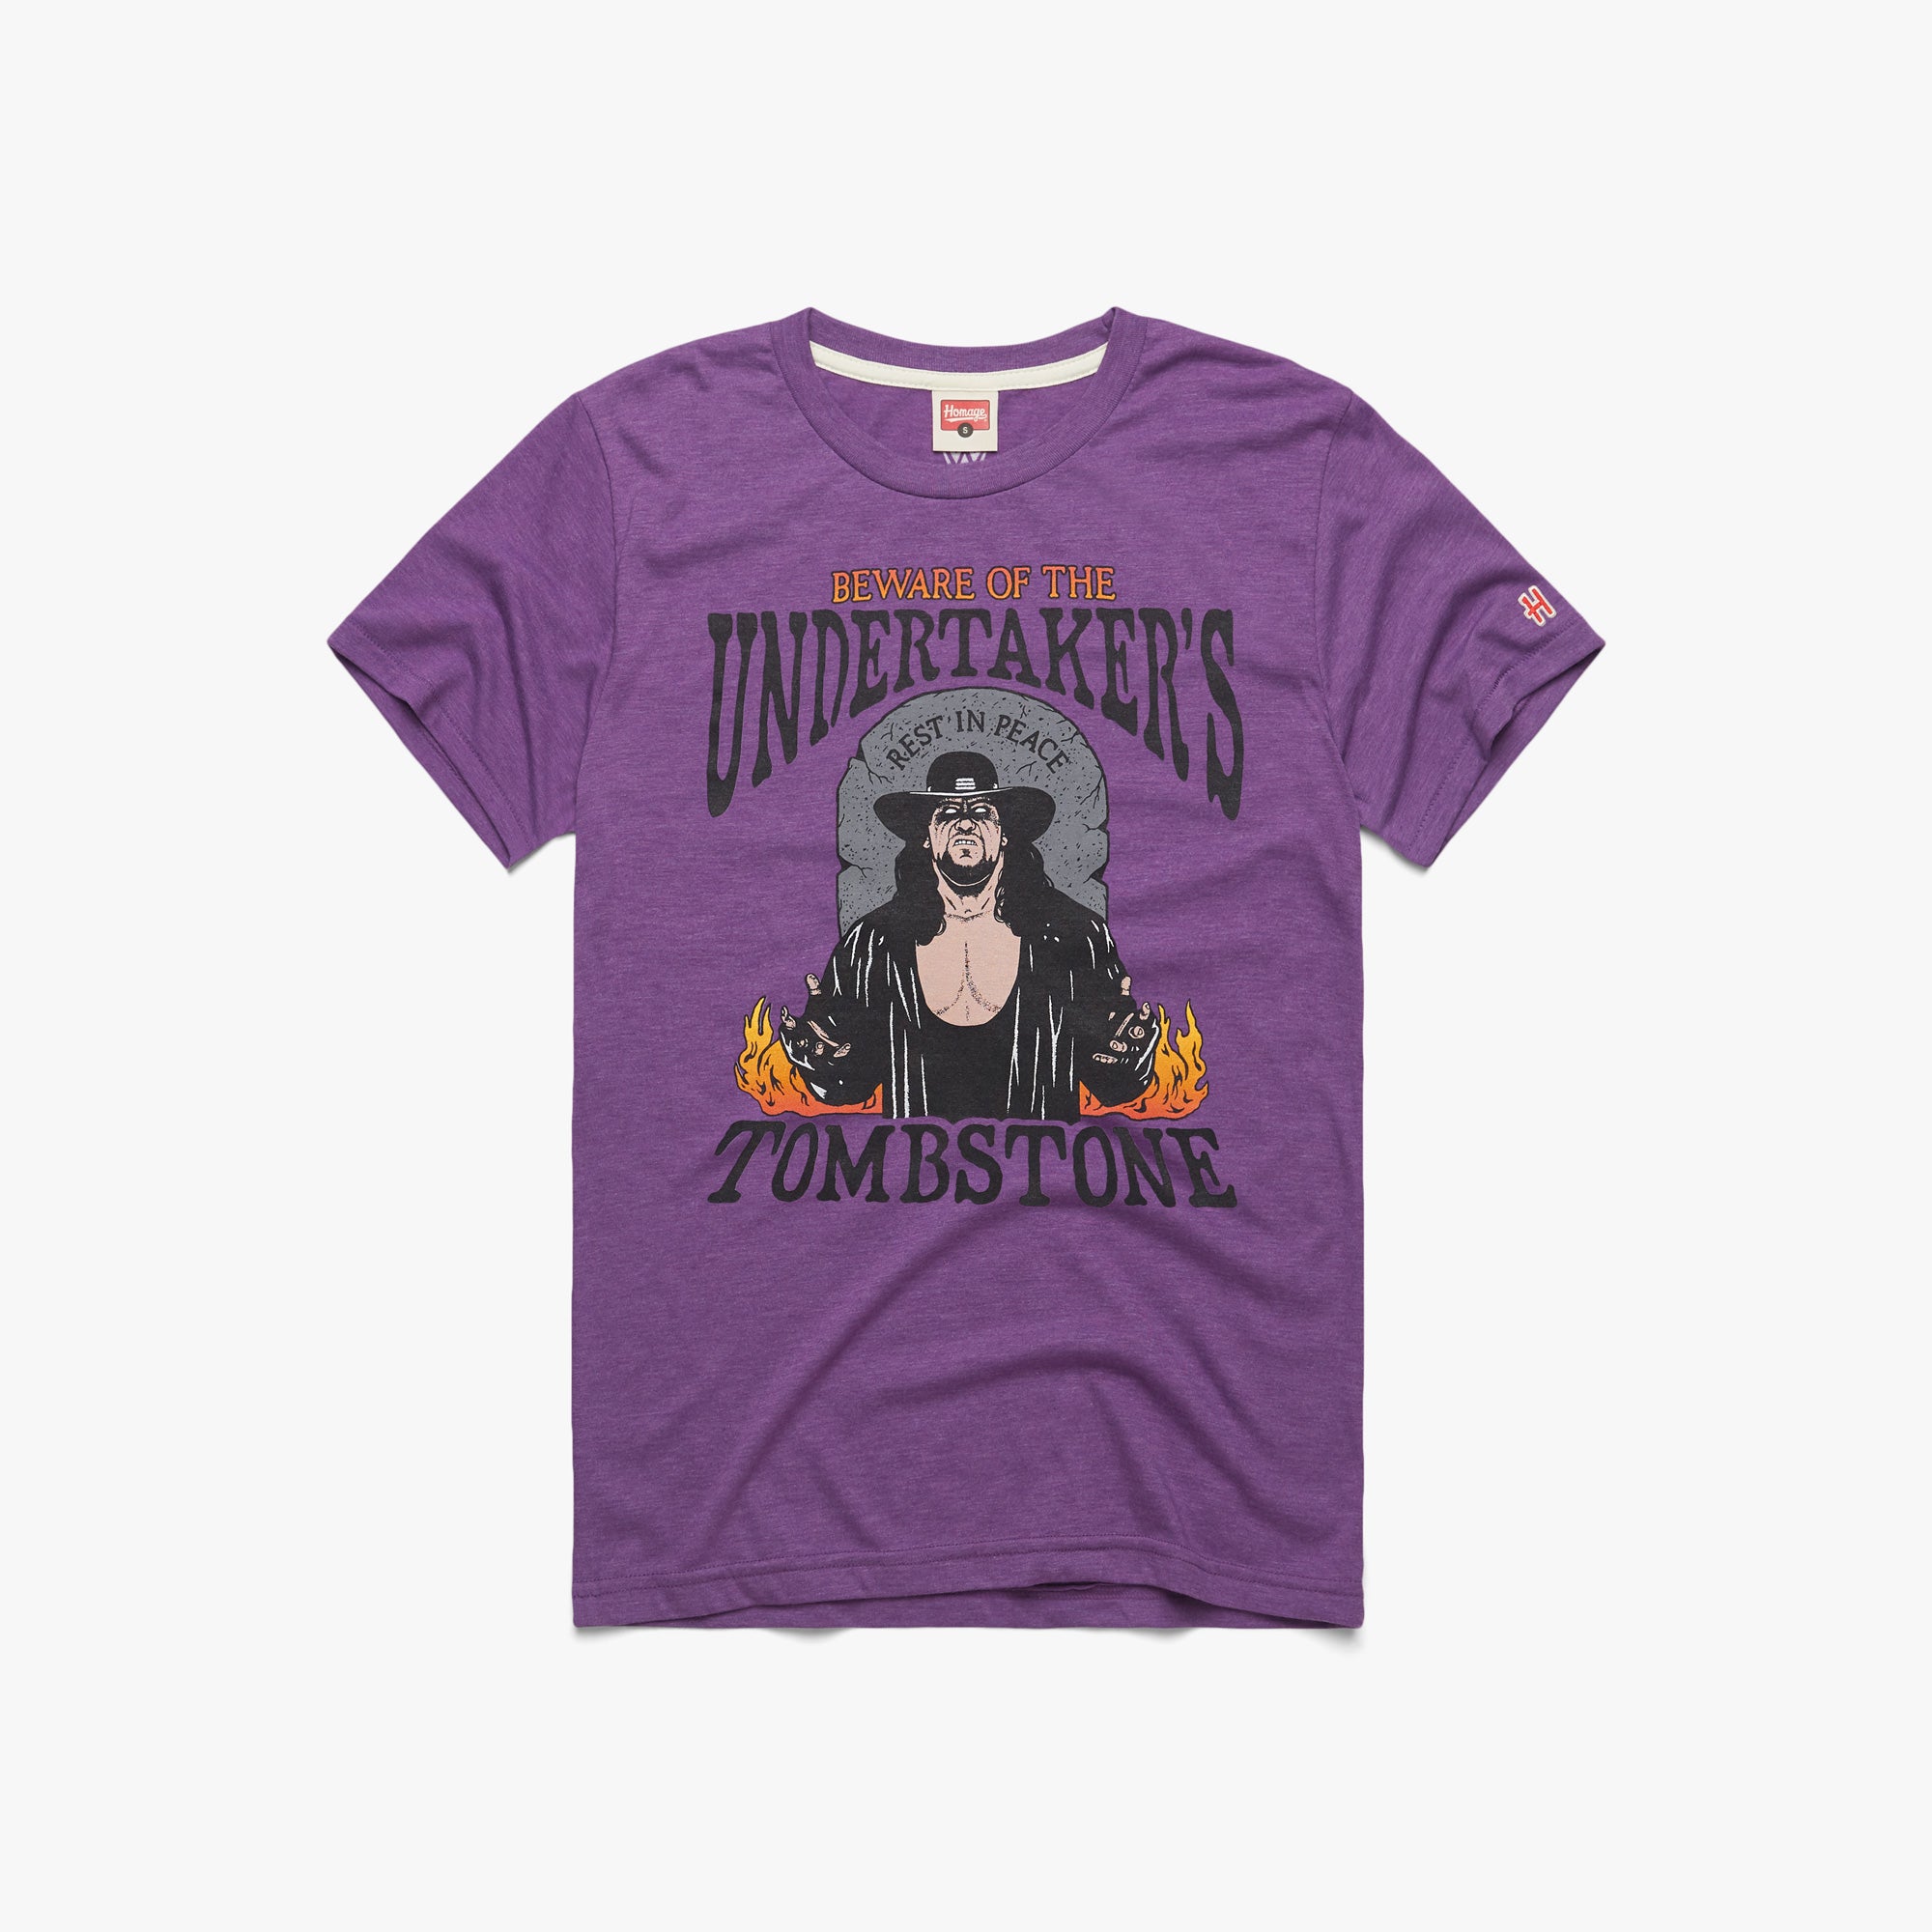 Undertaker's Tombstone